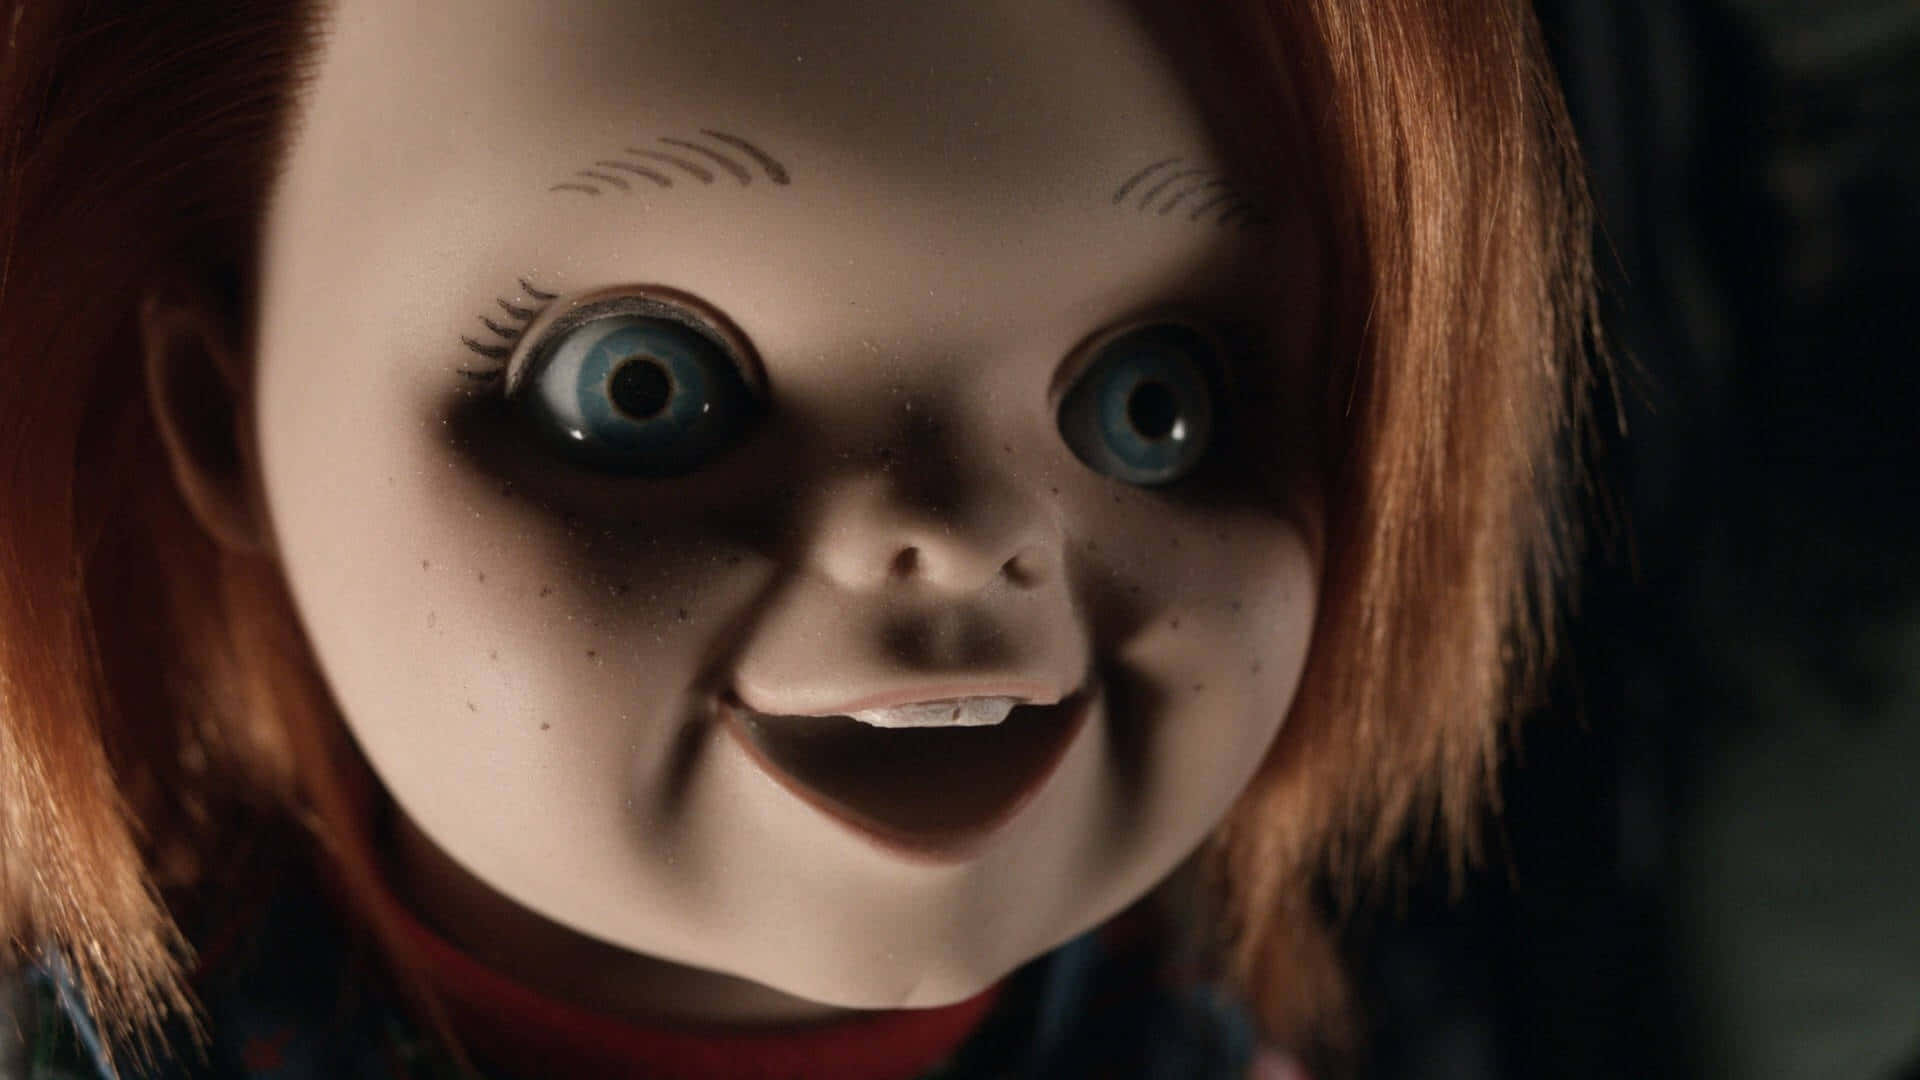 Lad Chucky, Den Berygtede Skrækdoll – Fange Din Opmærksomhed og Frygt Wallpaper